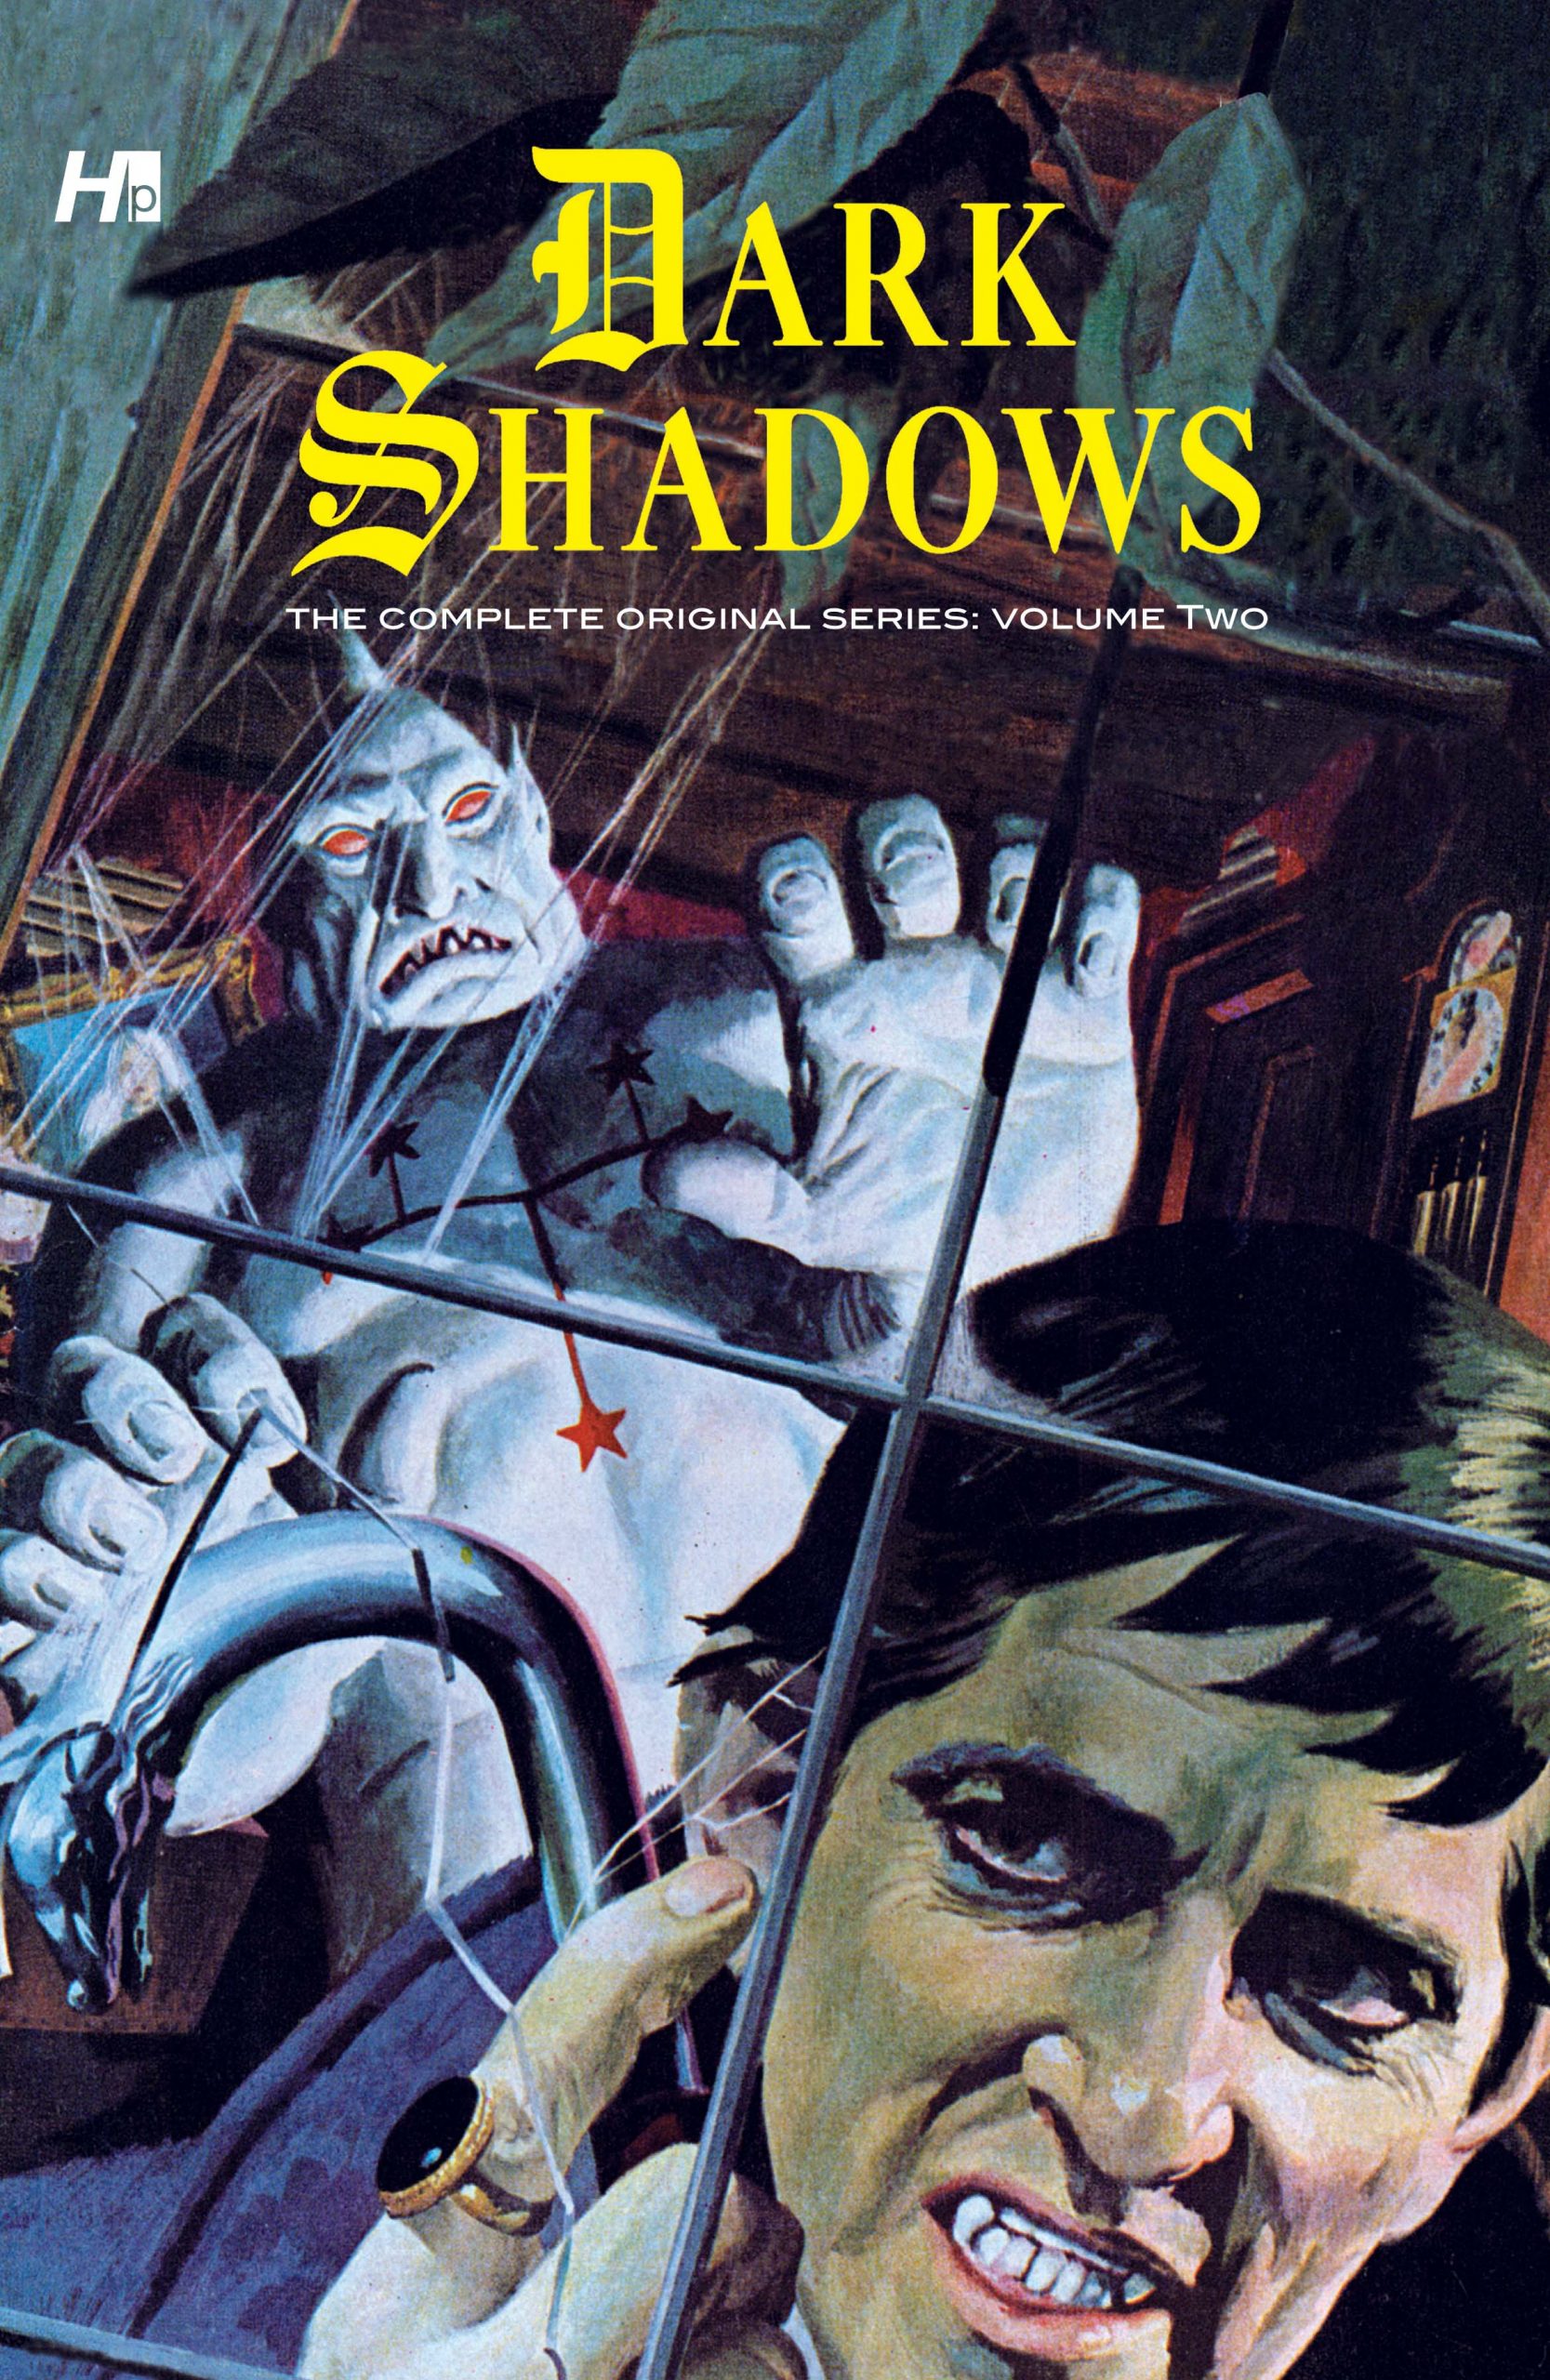 'Dark Shadows' comic book collection, volume 2